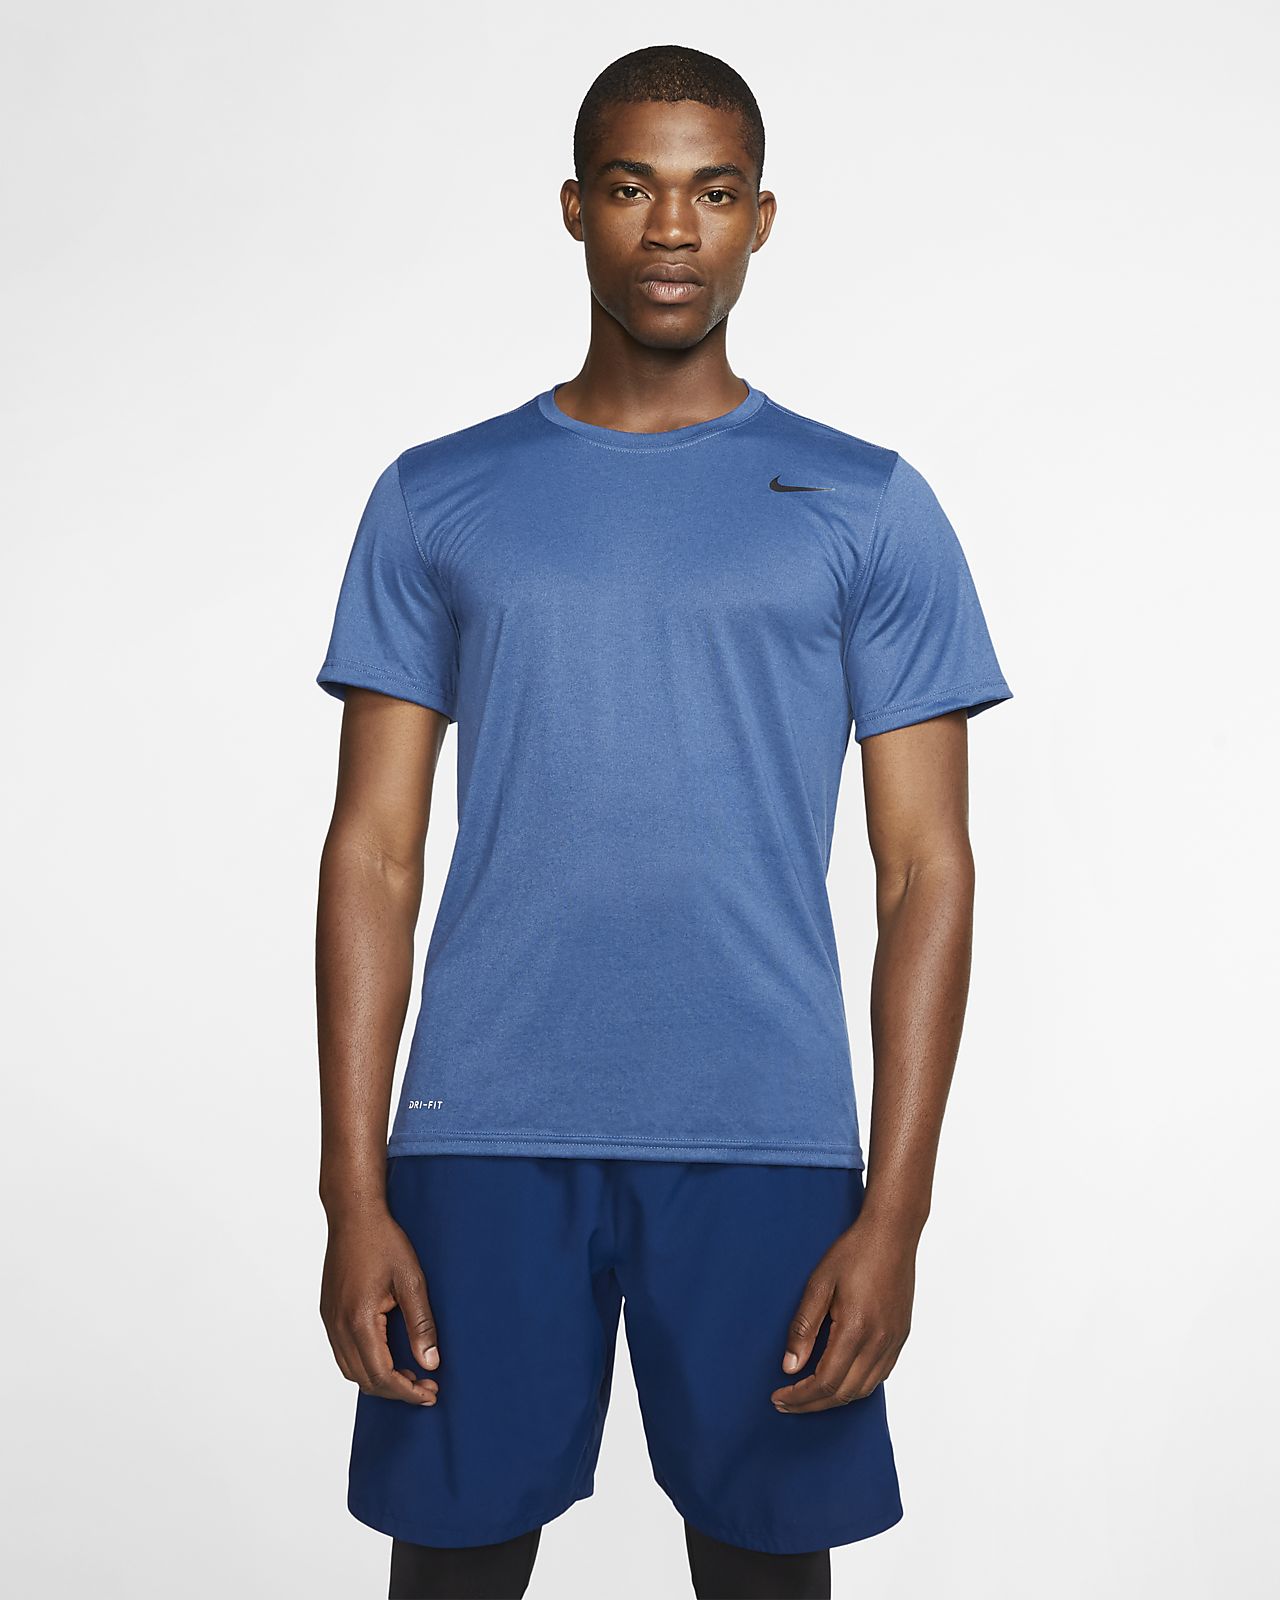 Nike Legend 2.0 Men's Training T-Shirt. Nike.com